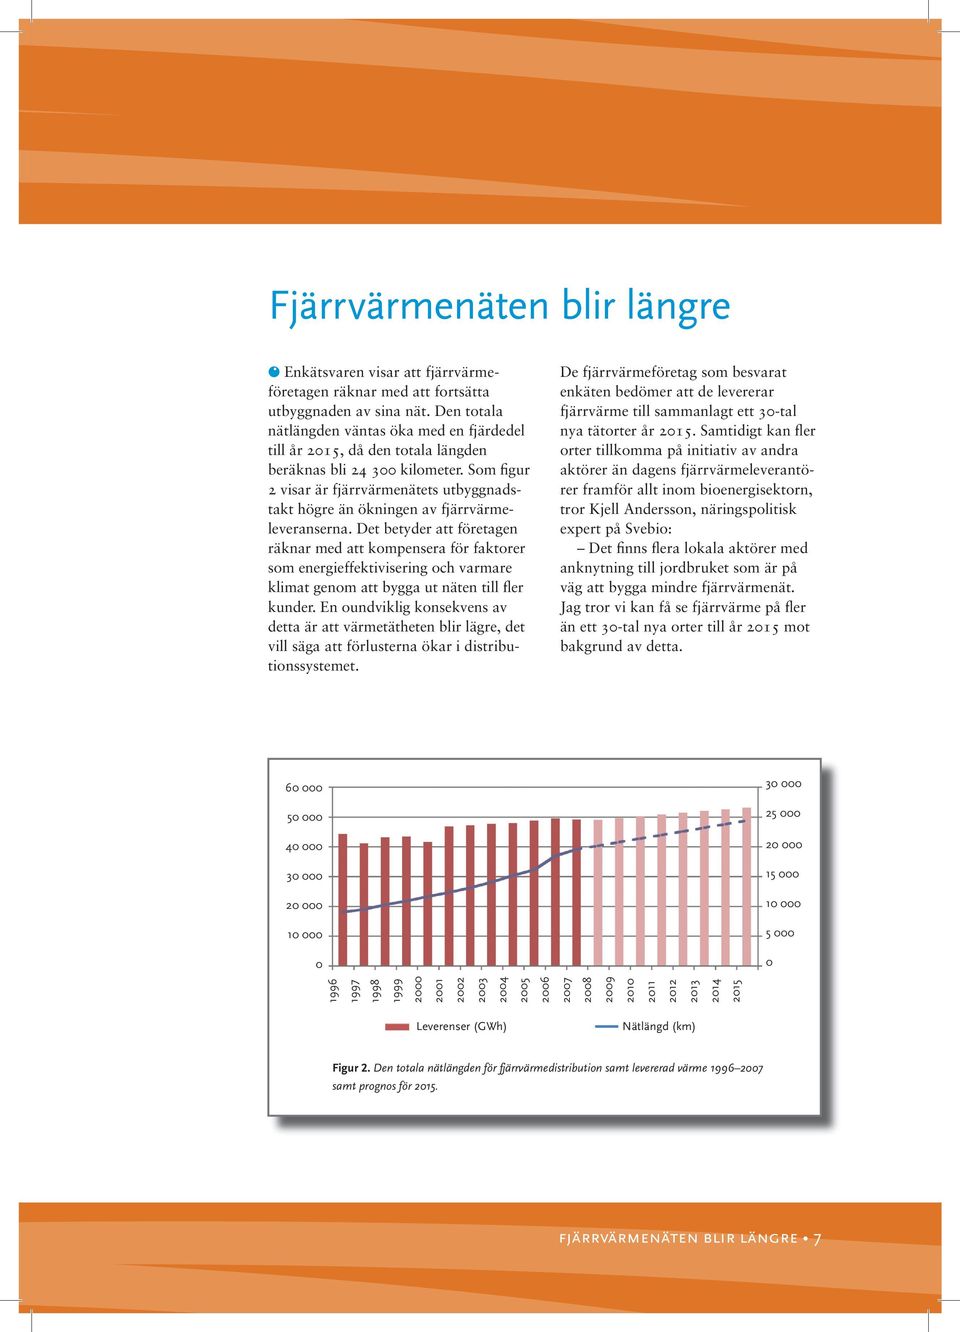 Som figur 2 visar är fjärrvärmenätets utbyggnadstakt högre än ökningen av fjärrvärmeleveranserna.